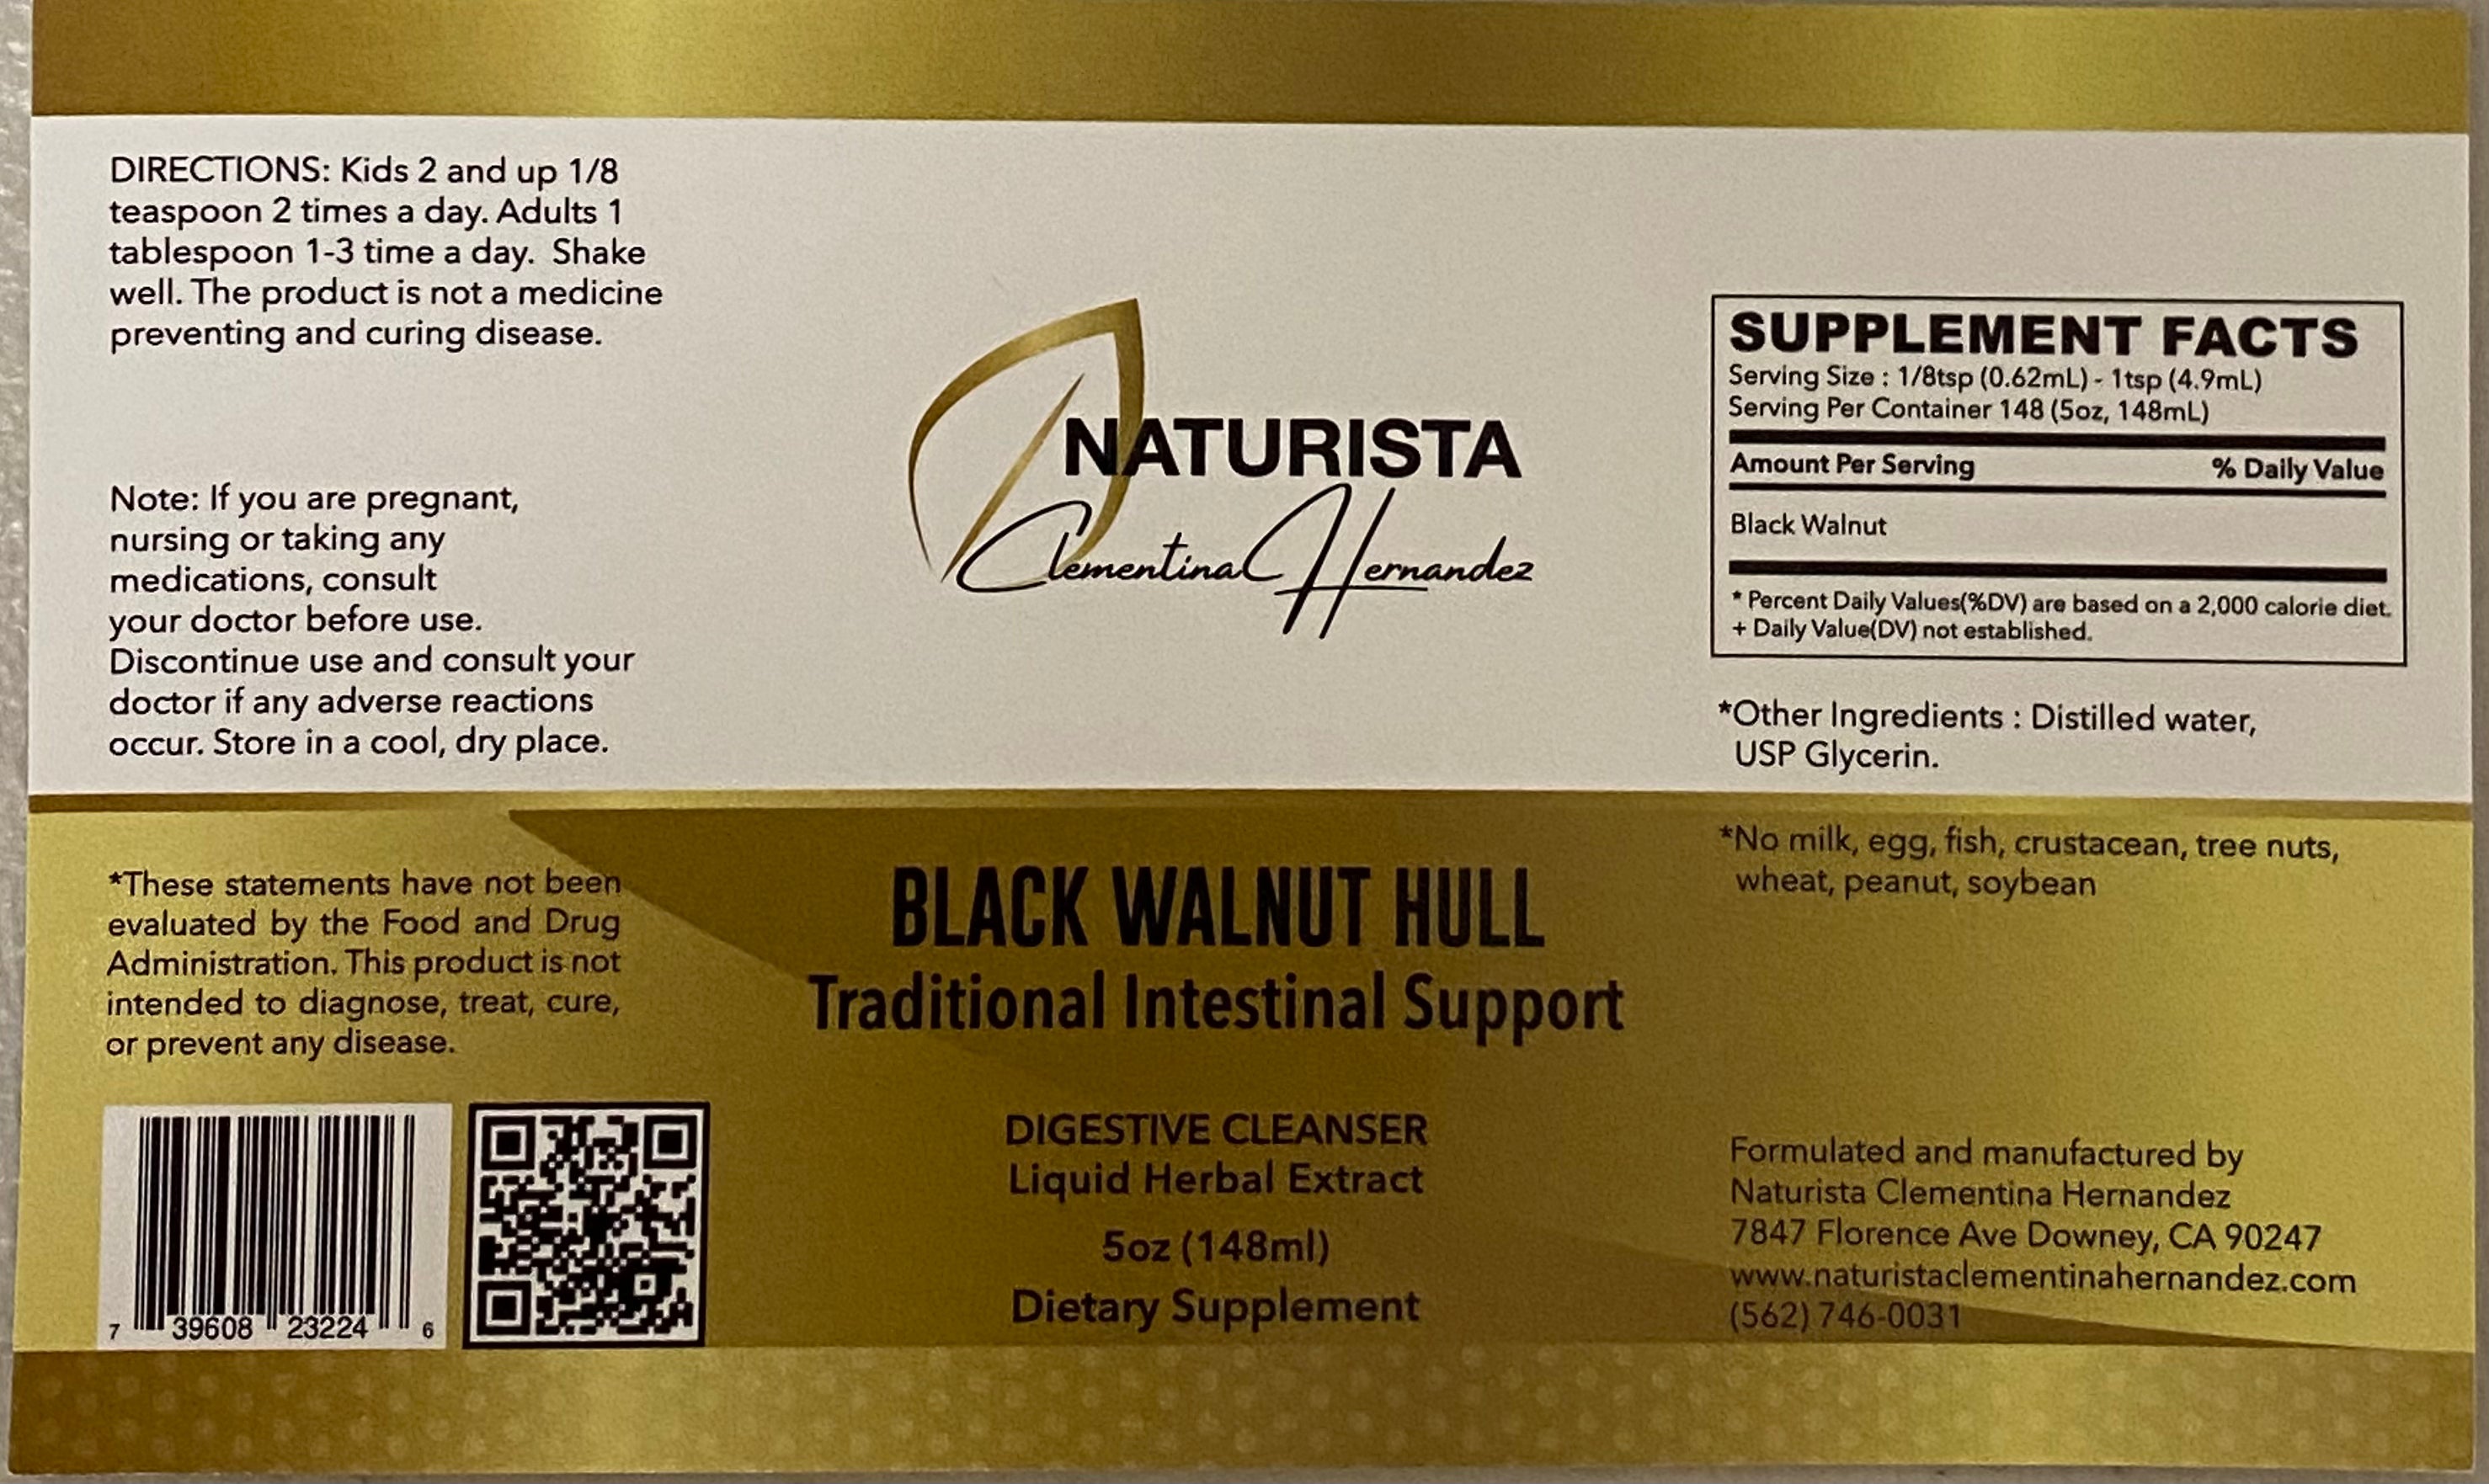 Black Walnut Hull Liquid